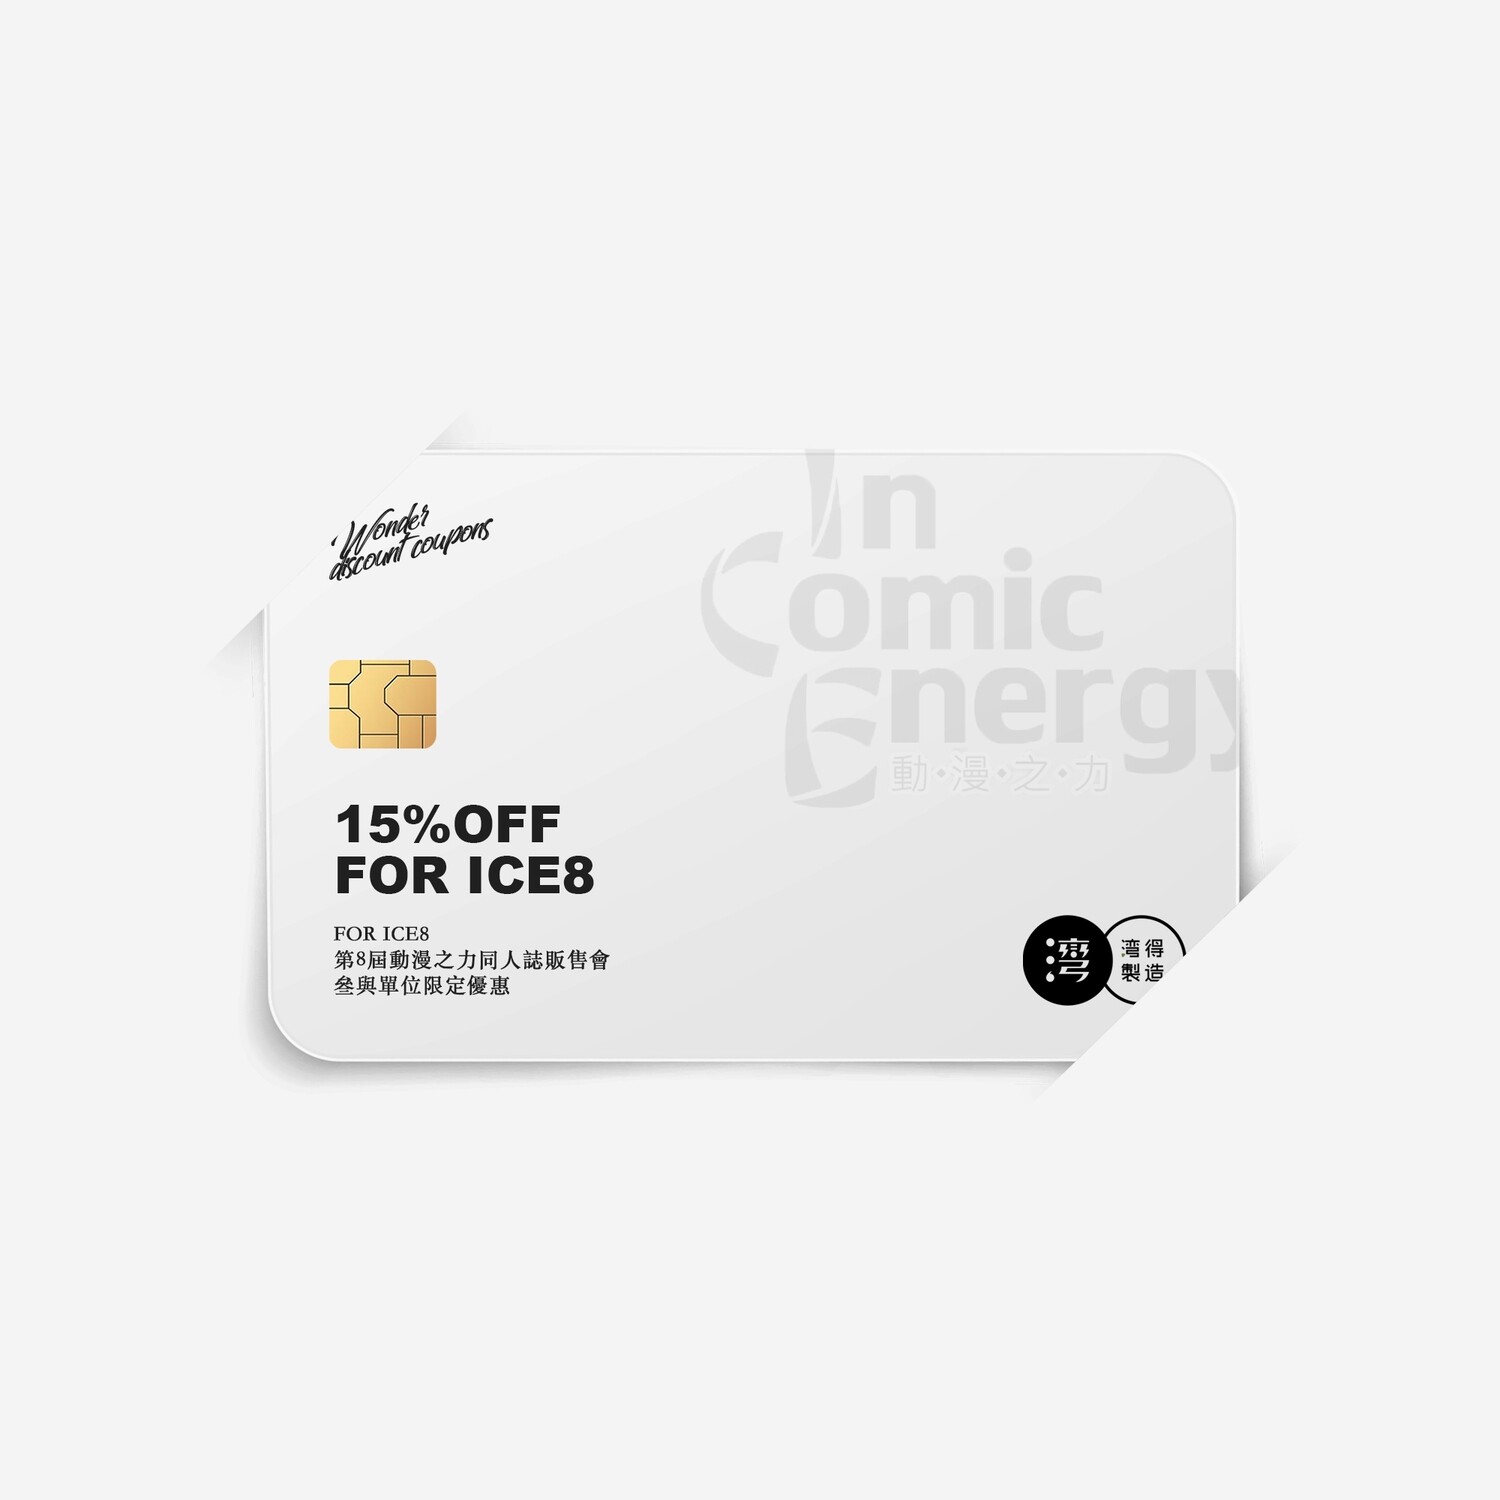 [場次優惠] ICE8 攤販 社團 限定 優惠 申請